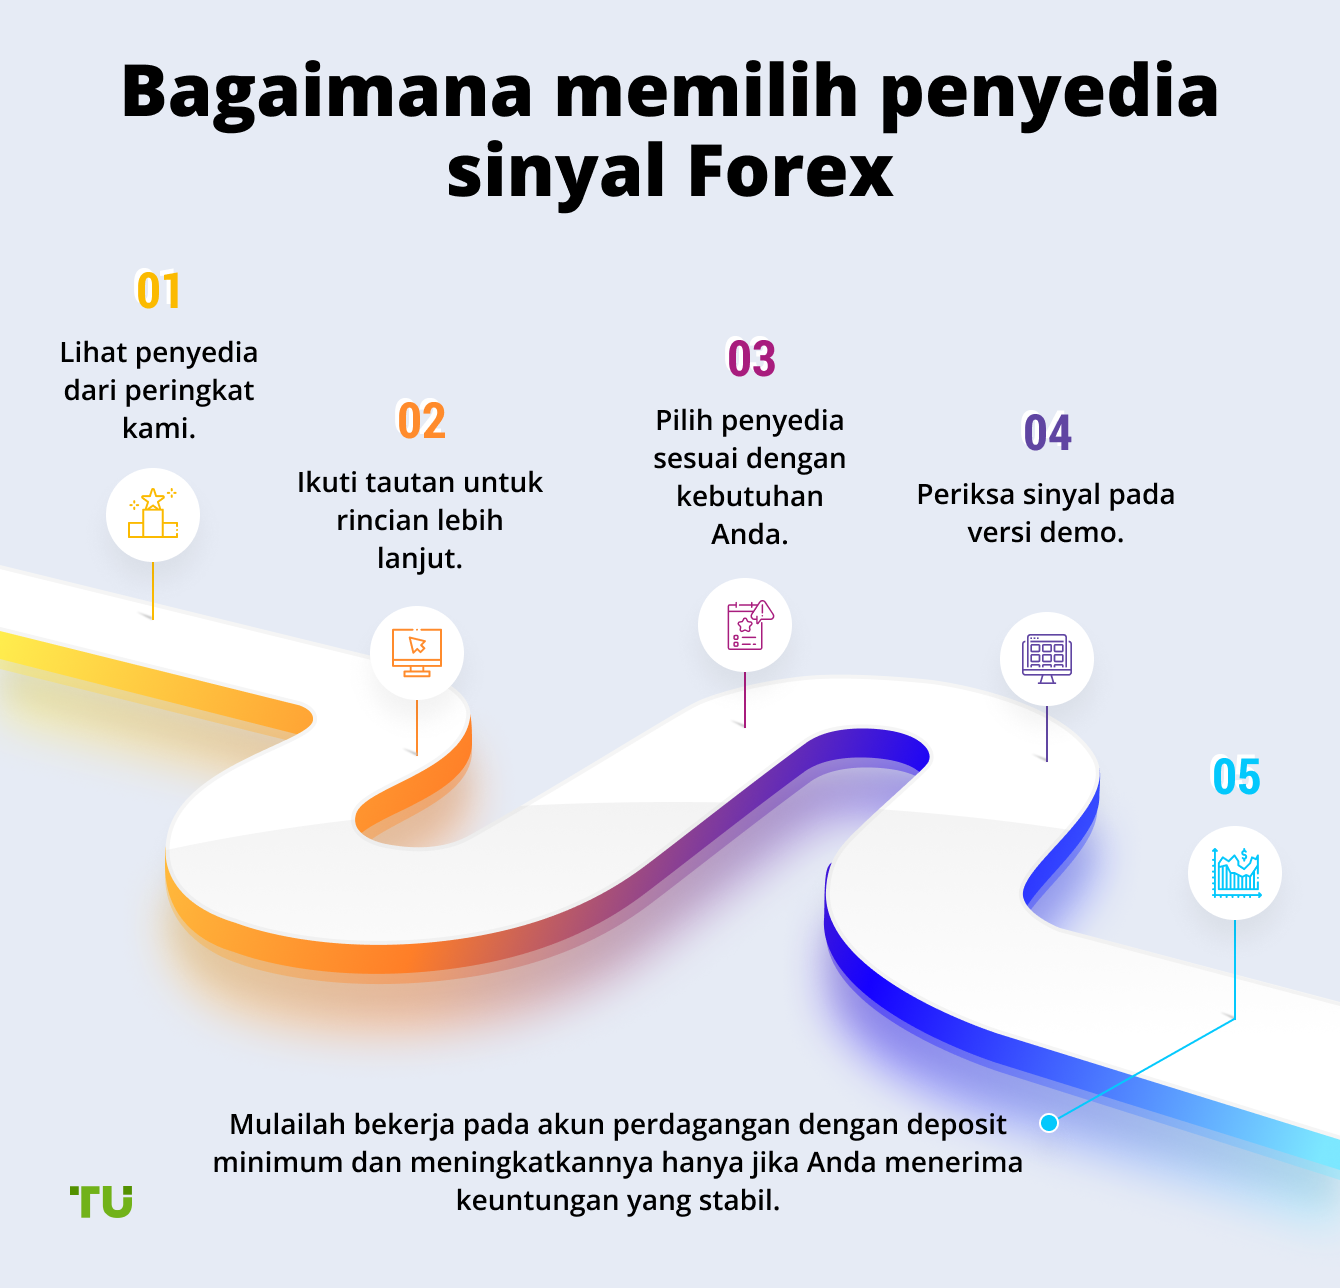 Bagaimana memilih penyedia sinyal Forex